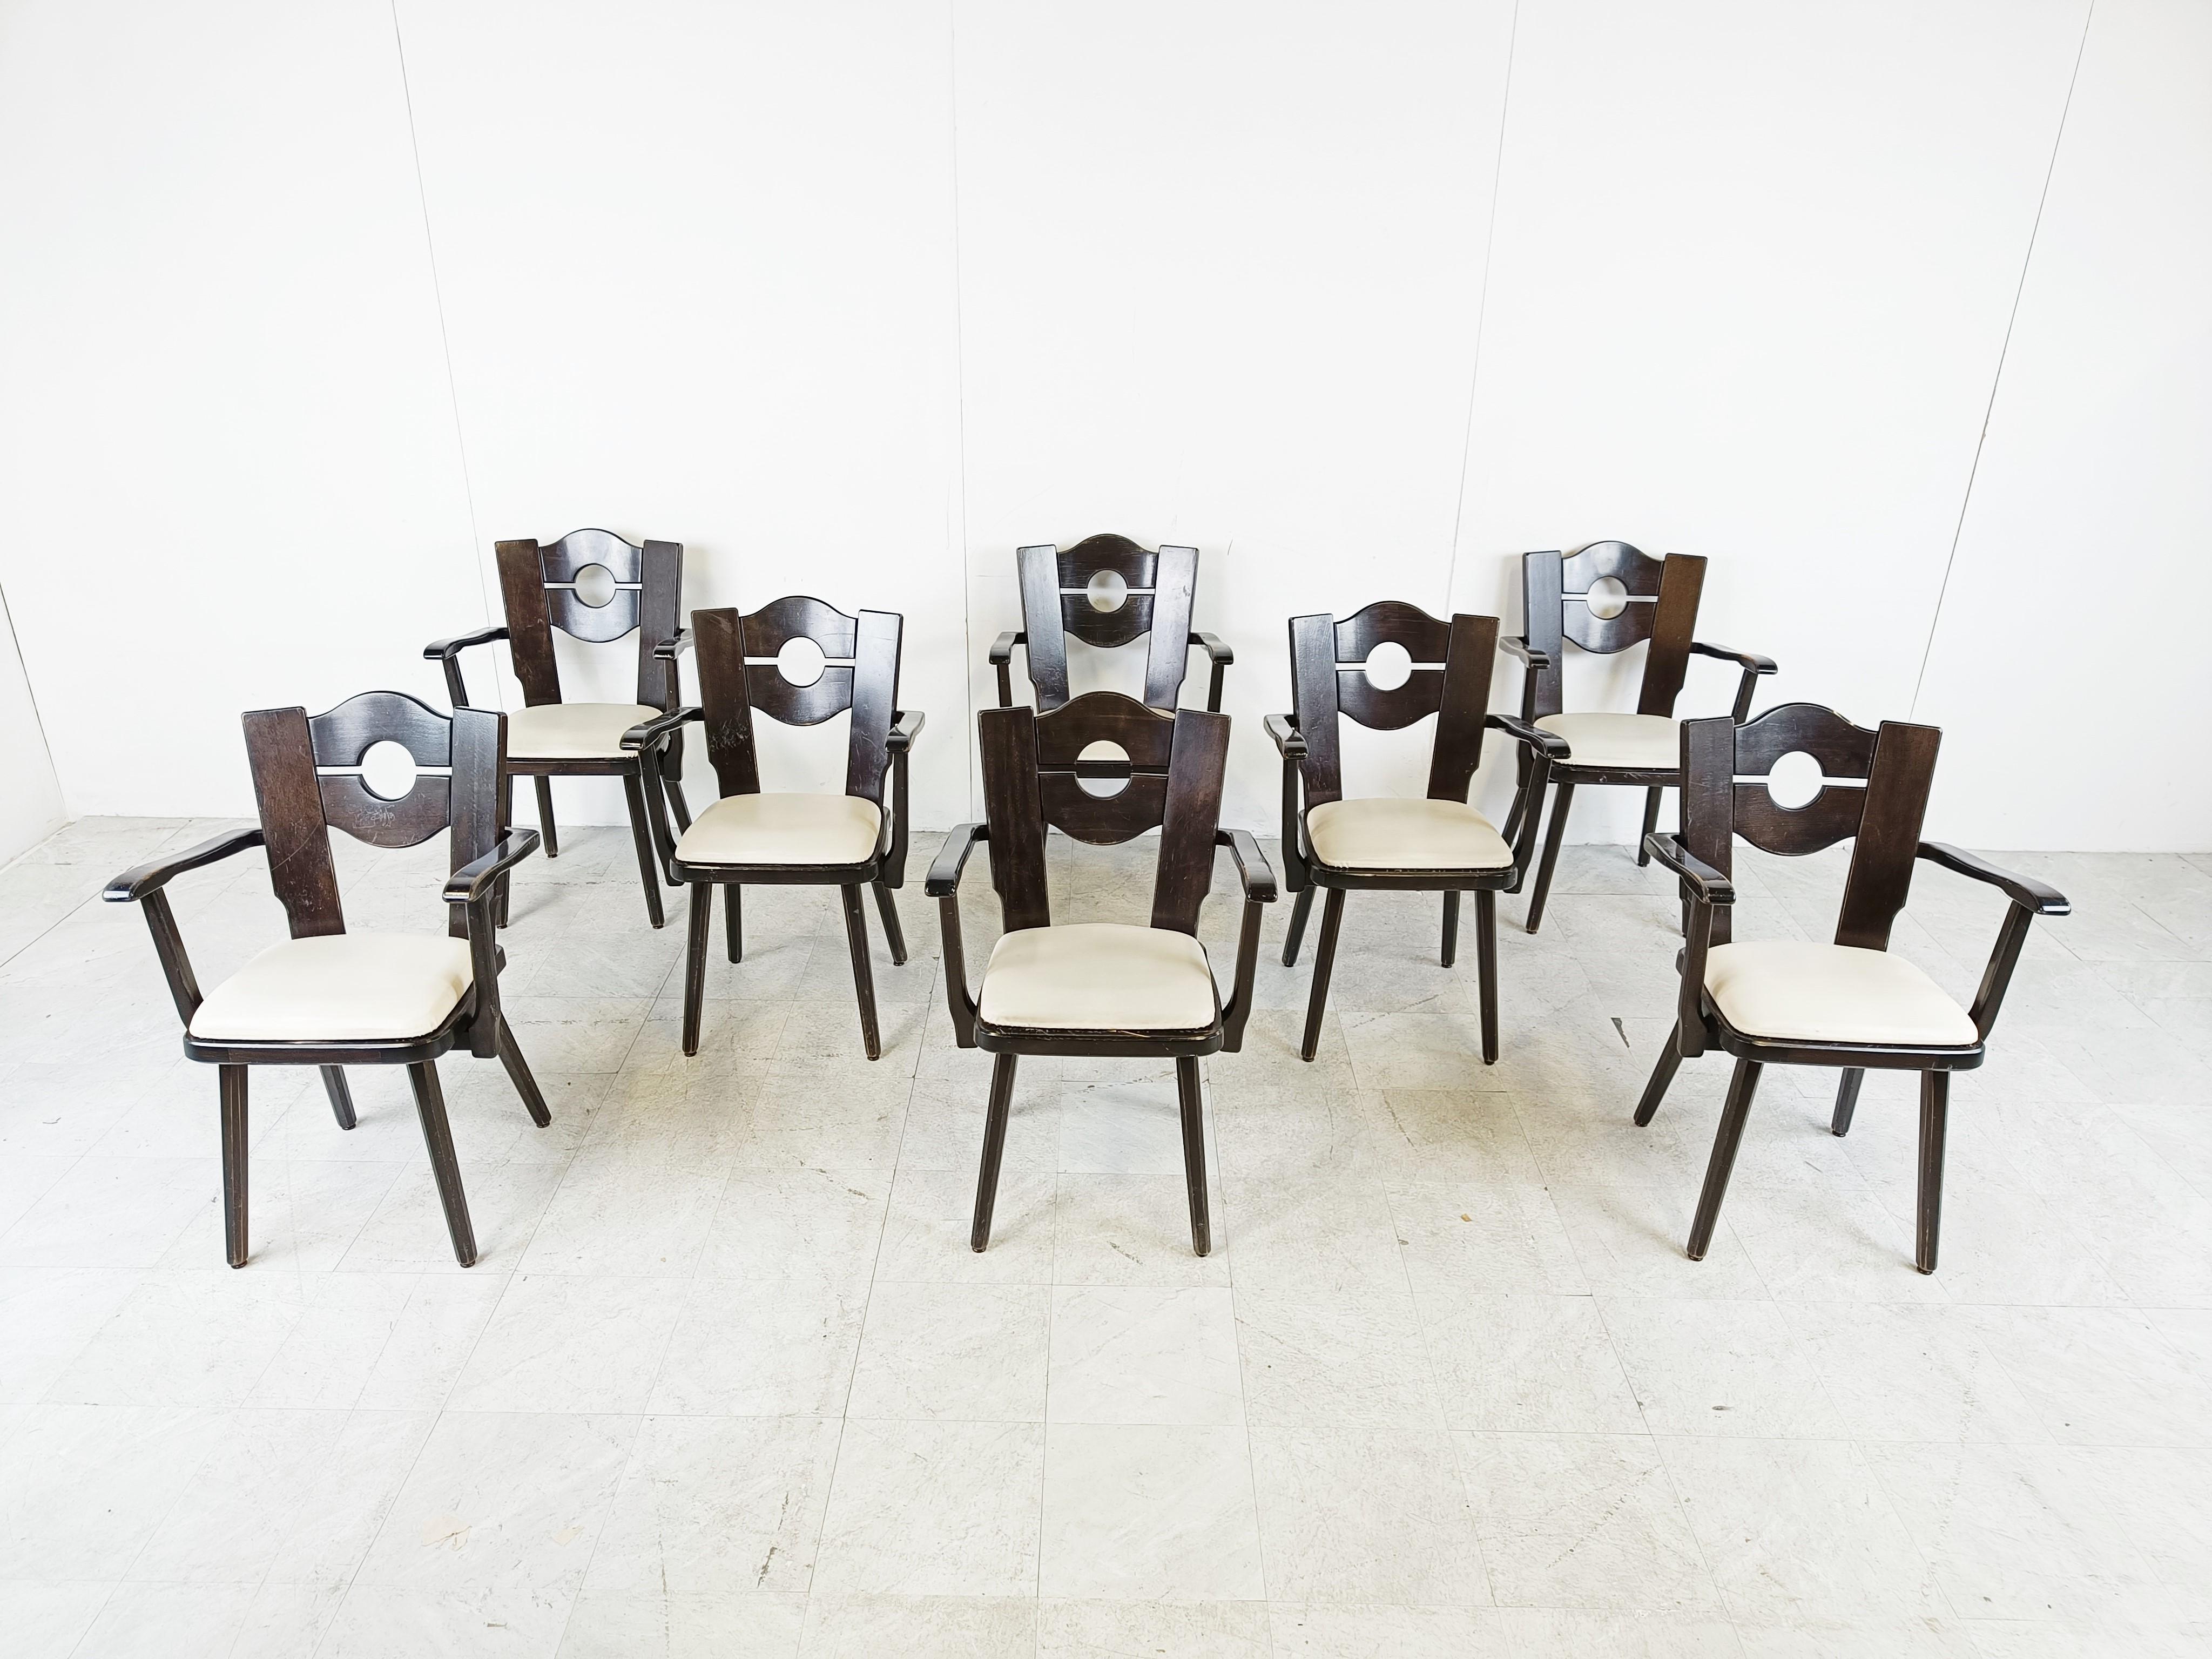 Chaises de salle à manger brutaliste en bois ébonisé avec accoudoirs.

Les chaises ont des sièges en skaï/leatherette blanc.

Bon état avec usure normale liée à l'âge.

Années 1960 - Allemagne

Dimensions :

Hauteur : 85cm/33.46